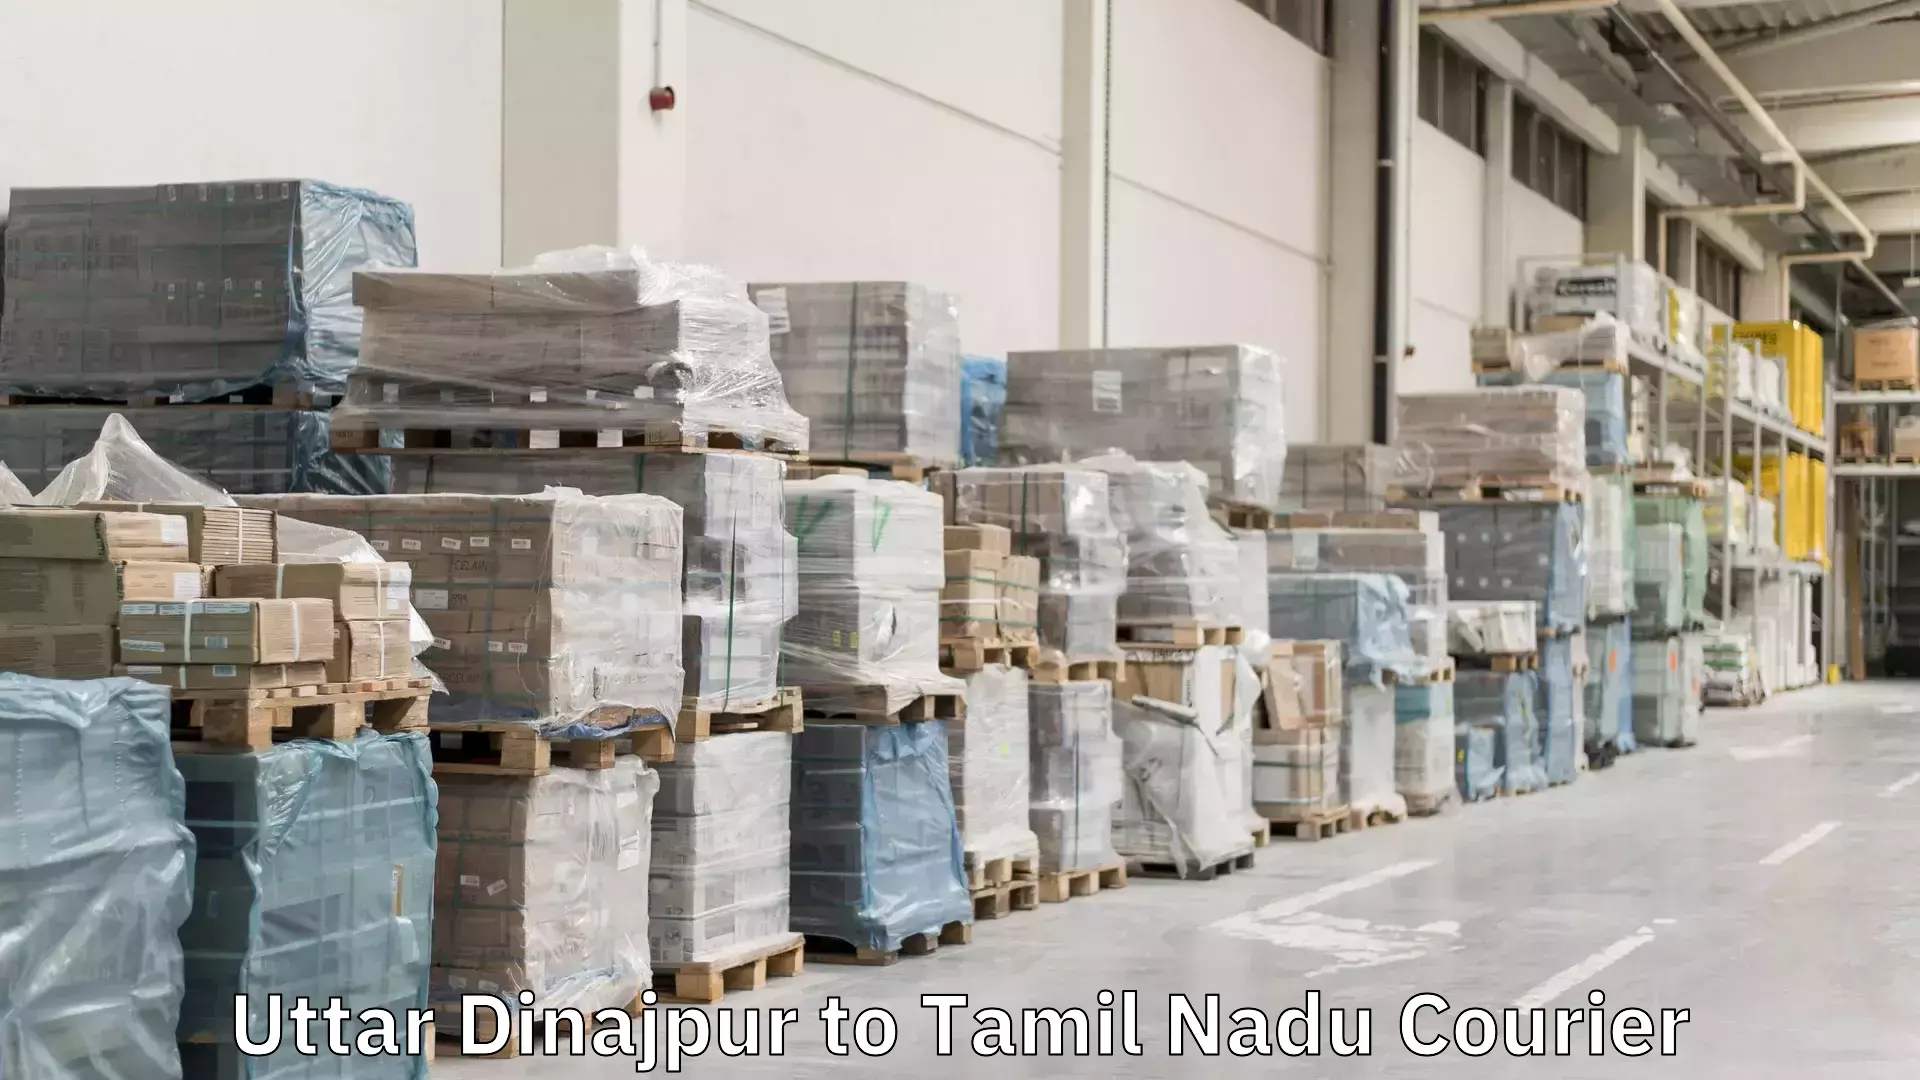 Efficient parcel service Uttar Dinajpur to Tamil Nadu